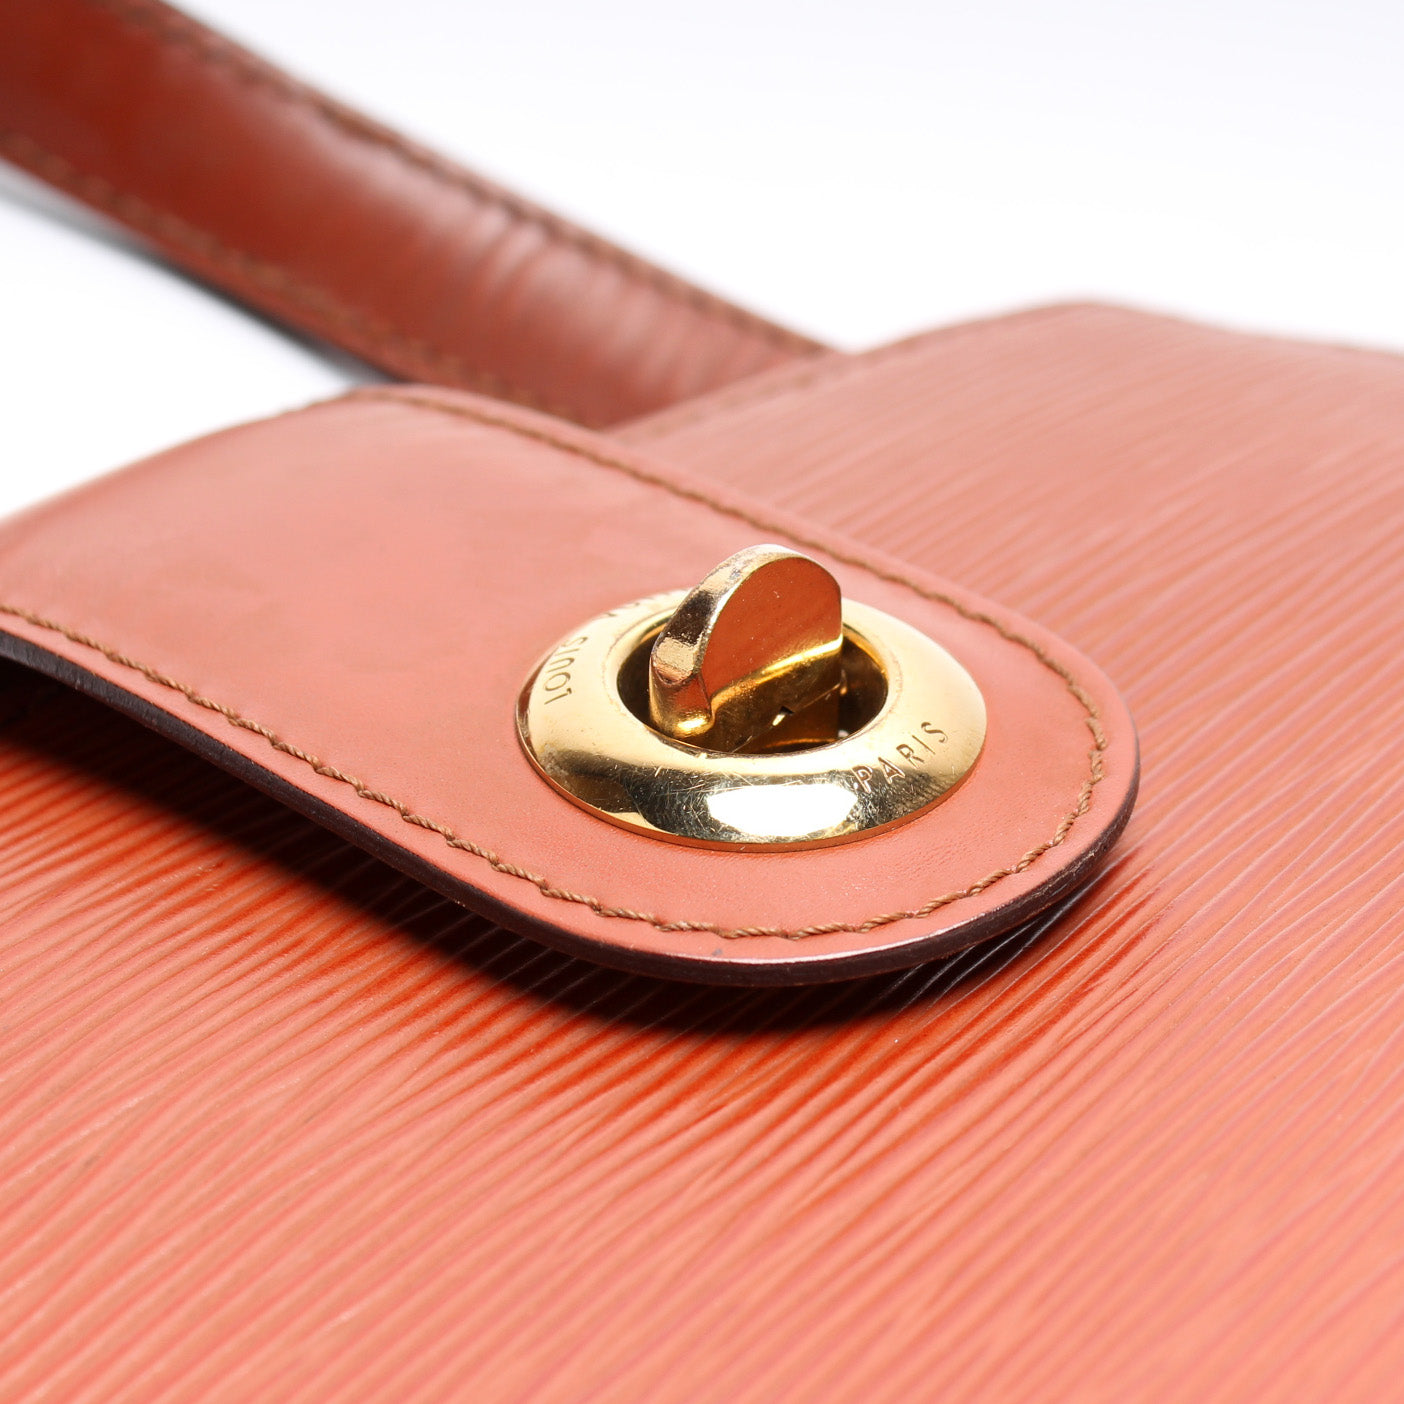 Cluny Shoulder Bag Epi Vintage – Keeks Designer Handbags